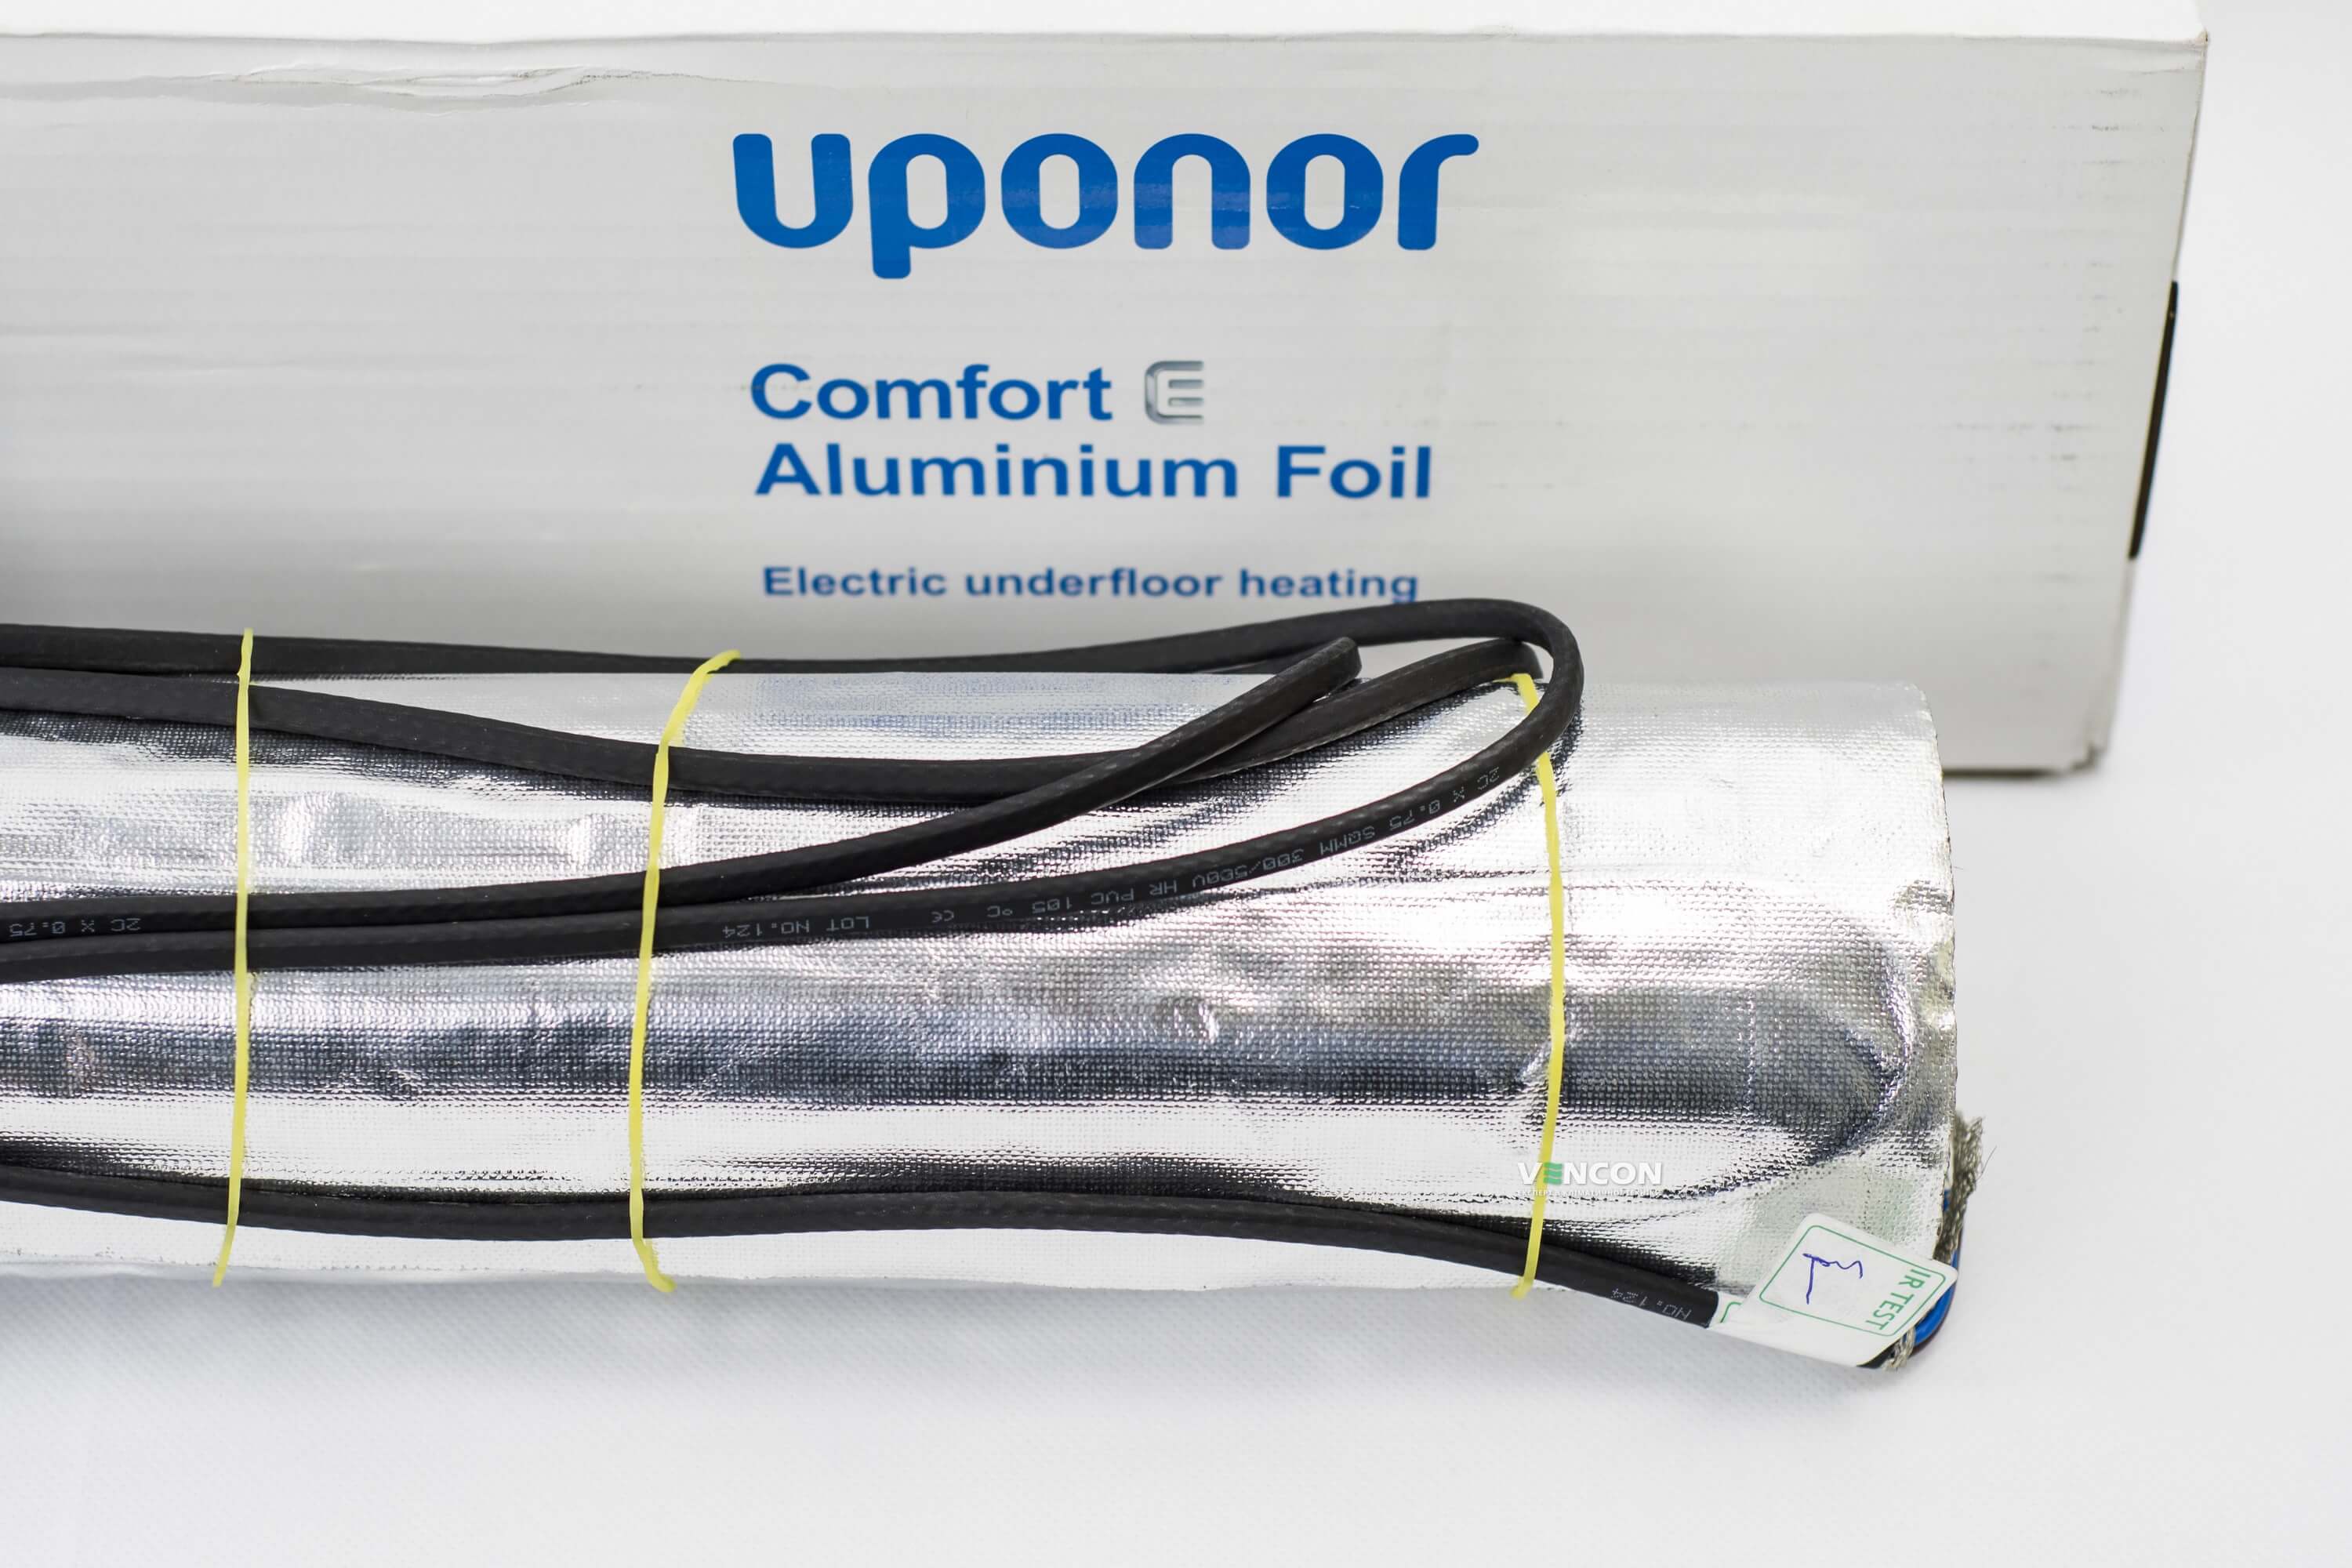 Электрический теплый пол Uponor Aluminium Foil 140-1 отзывы - изображения 5